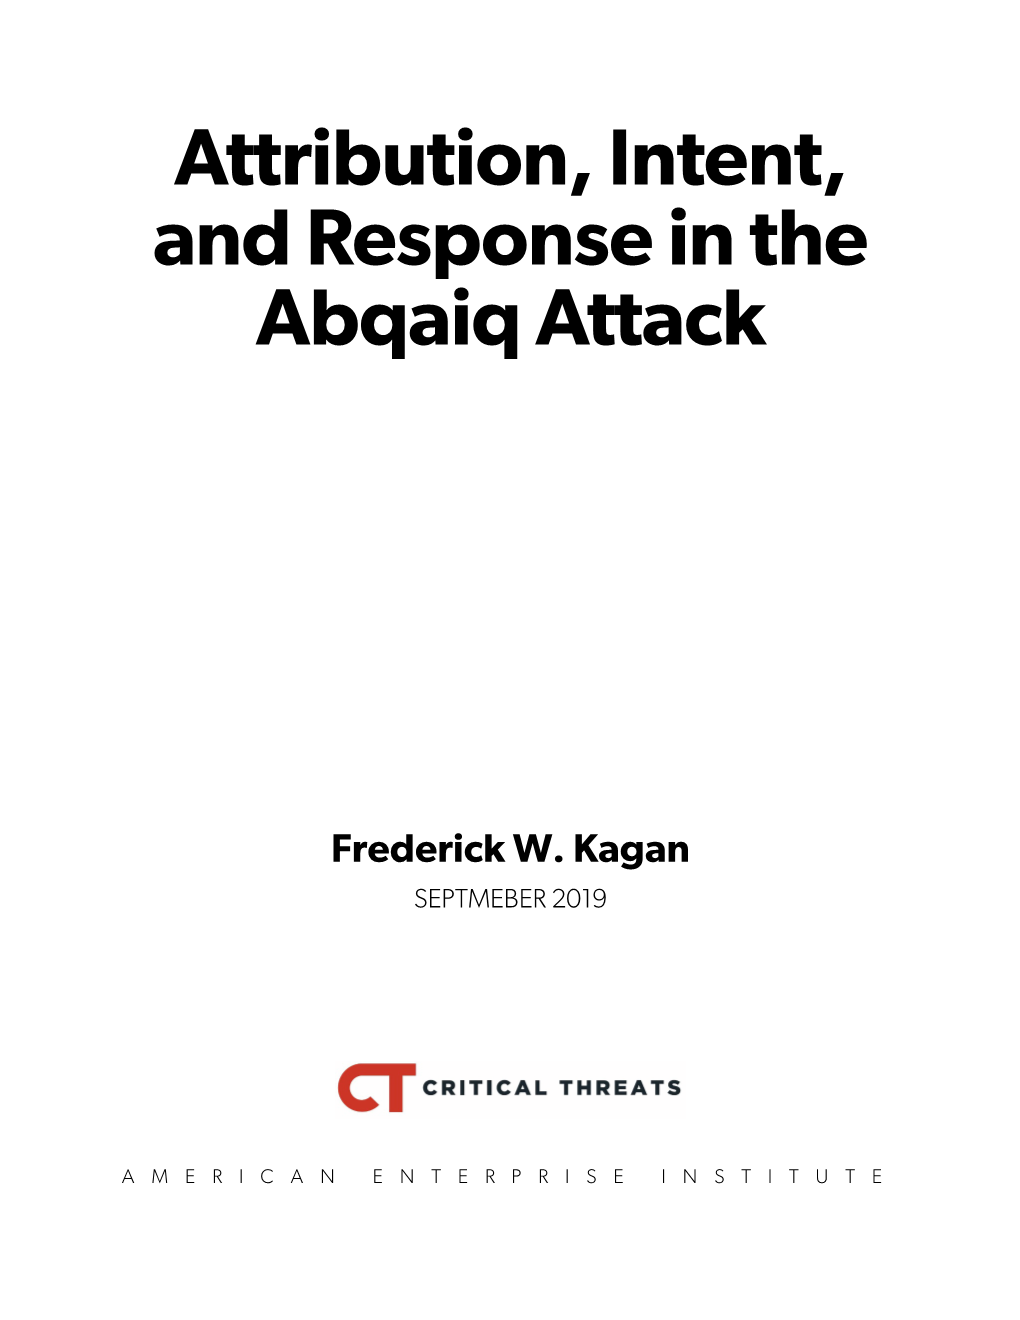 Abqaiq Analysis